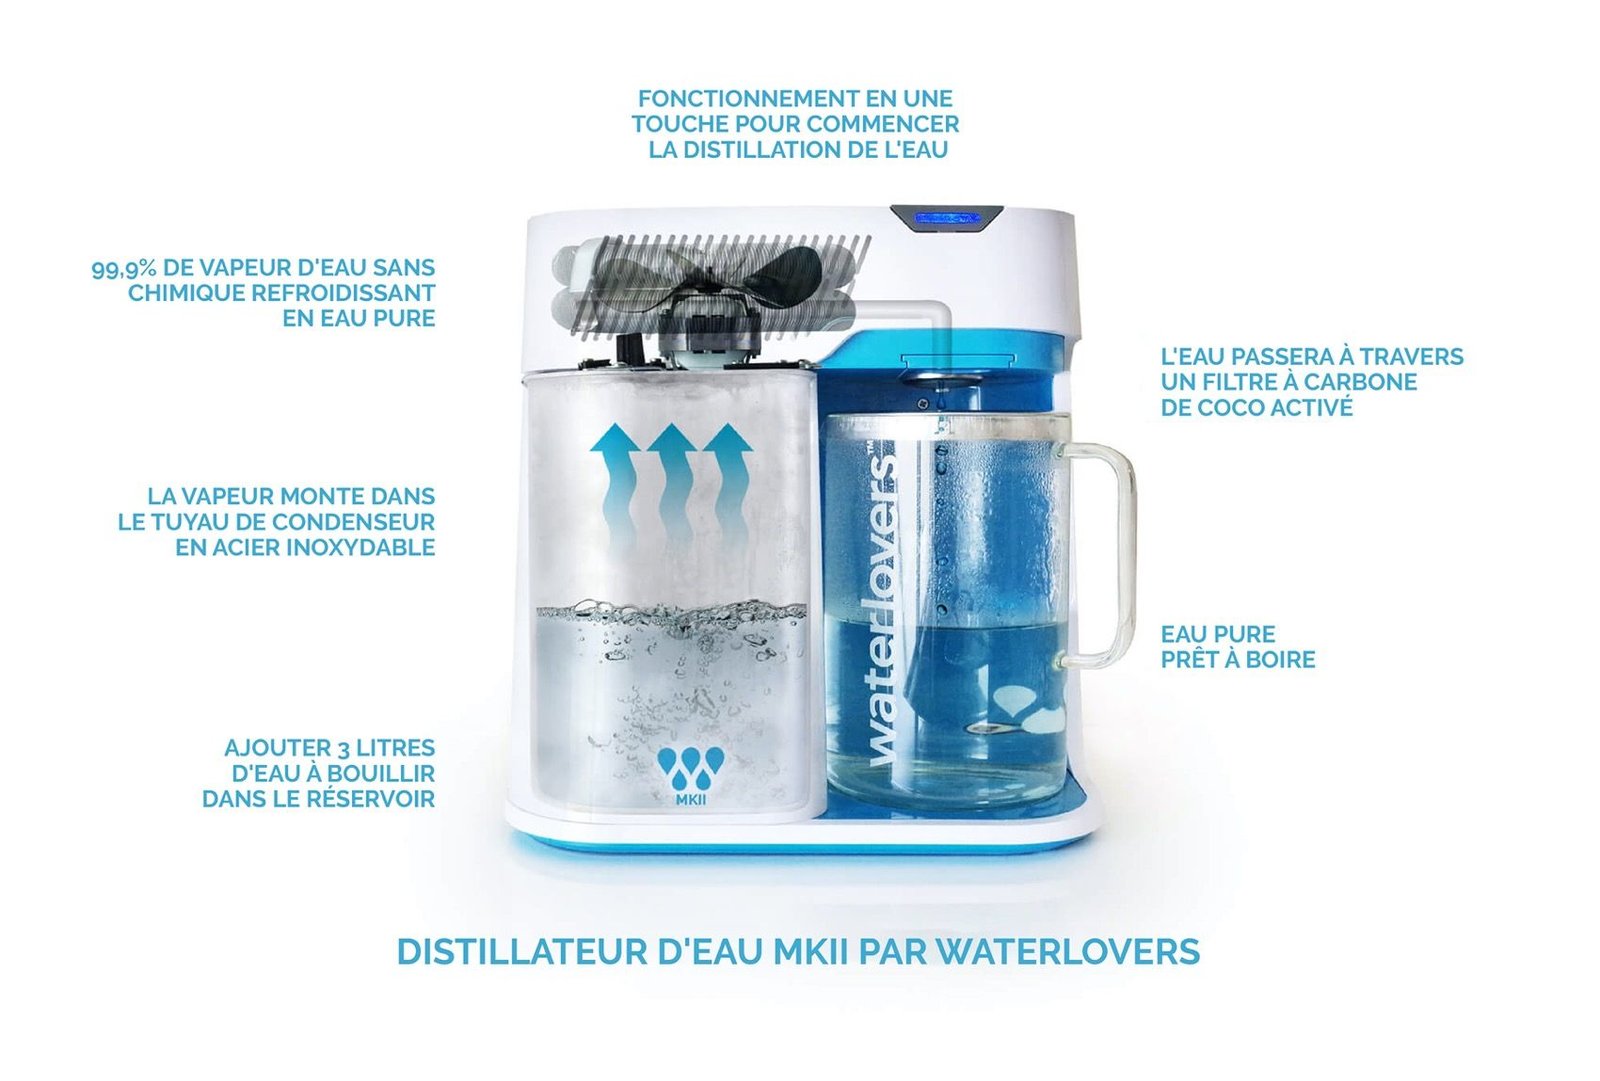 Meilleurs distillateurs d'eau sur le marché - WaterLowers MKII